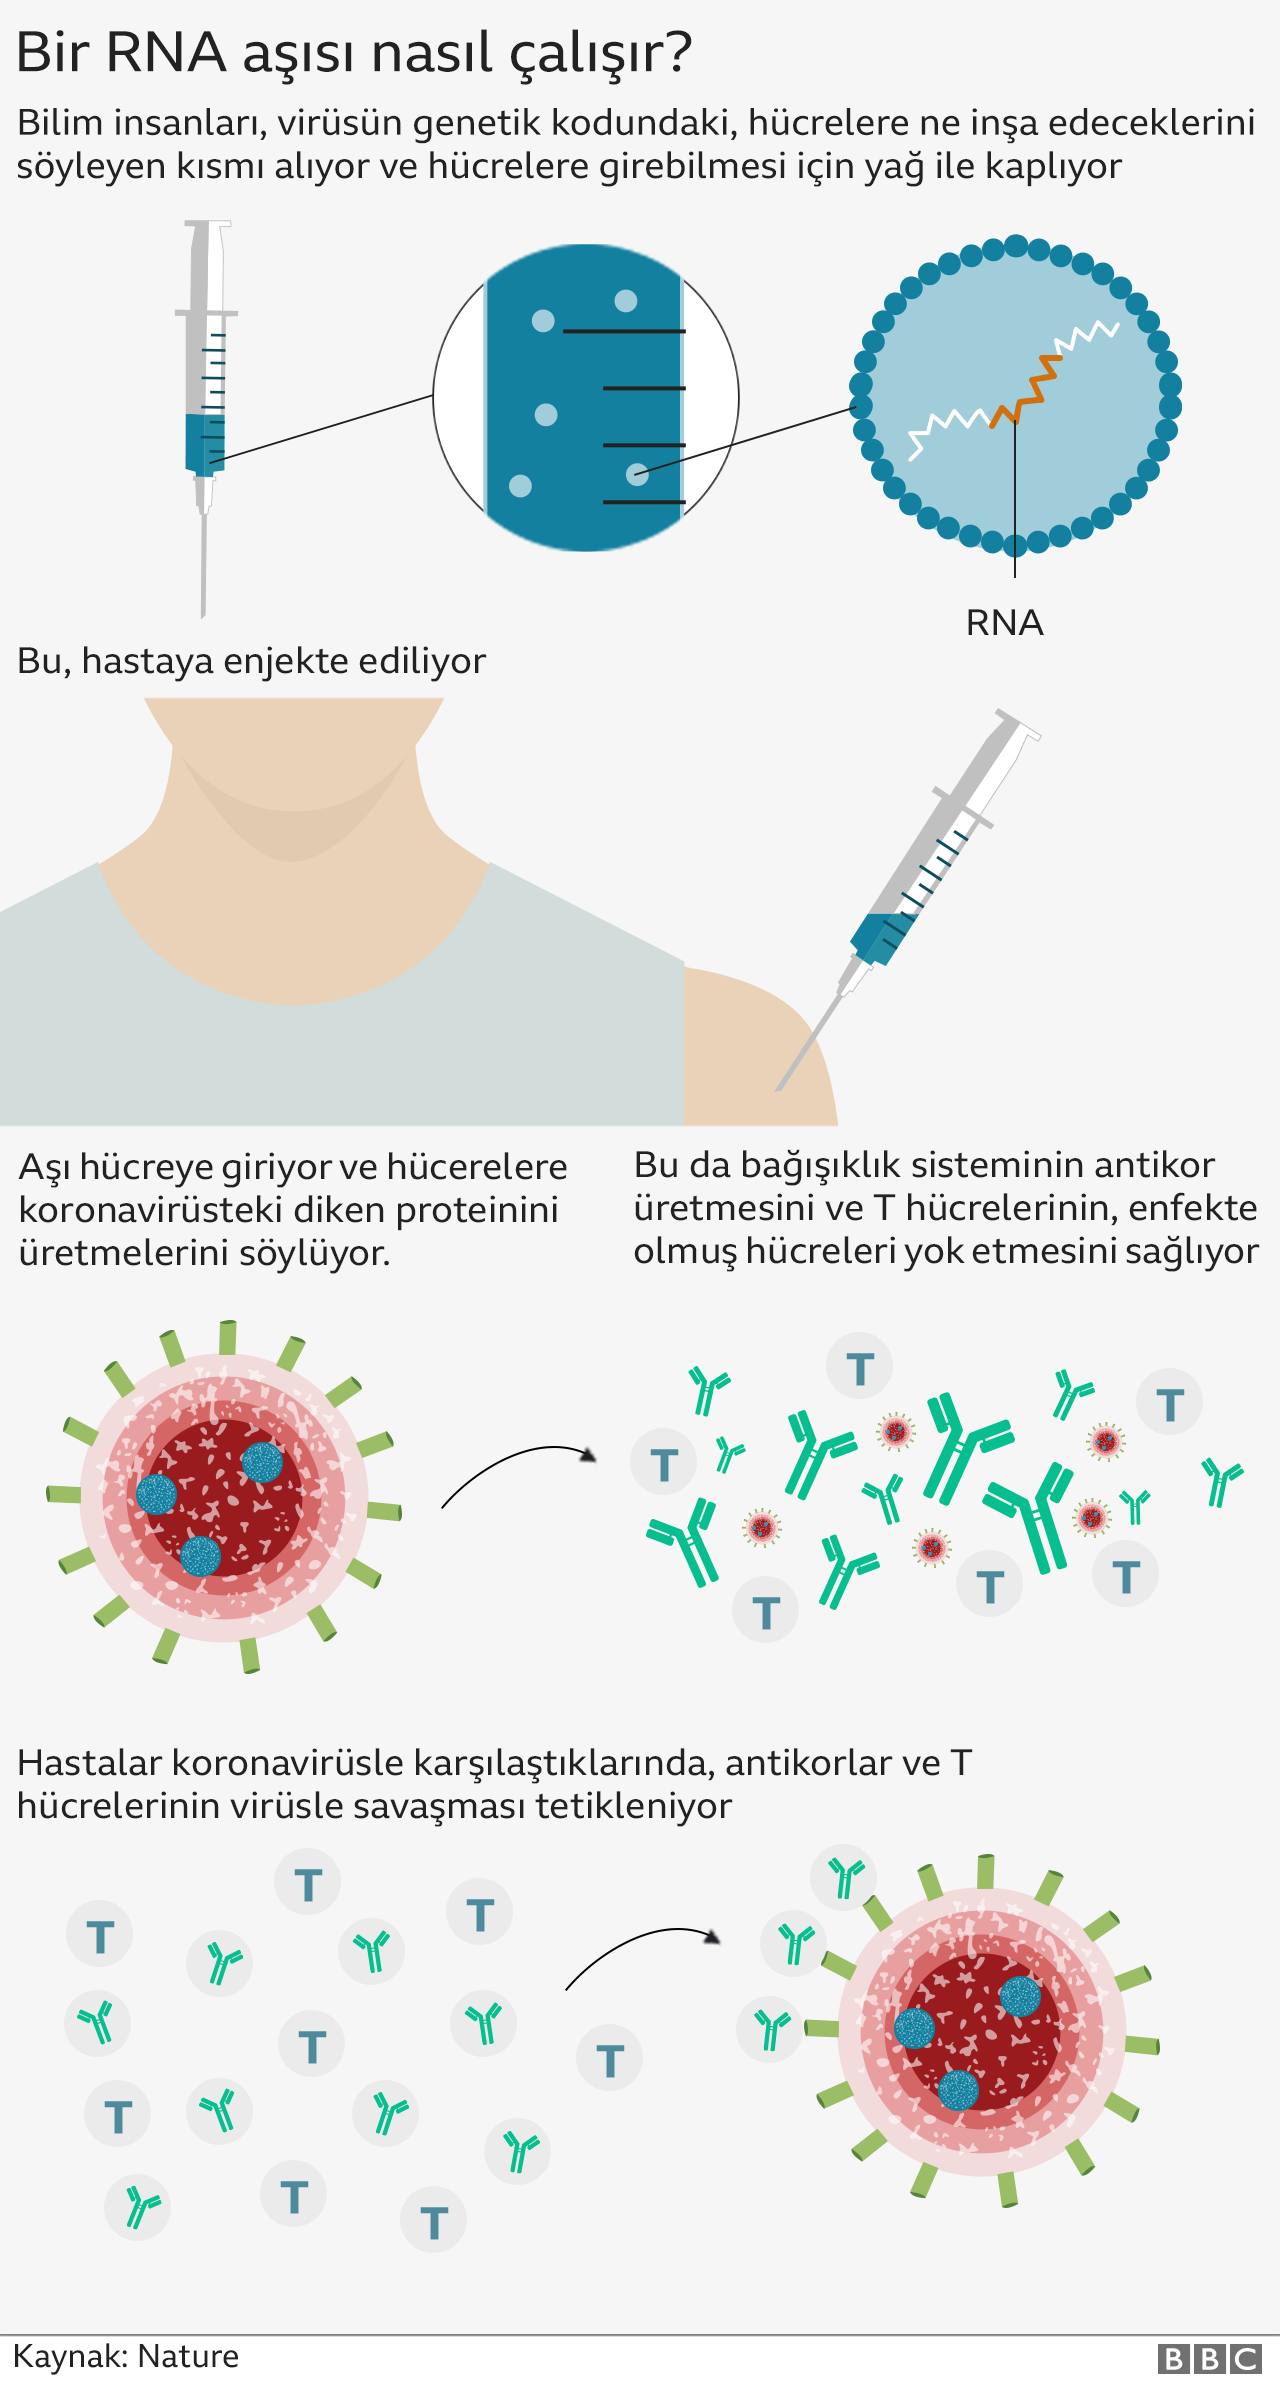 Koronavirüs aşıları kısırlığa yol açıyor mu?